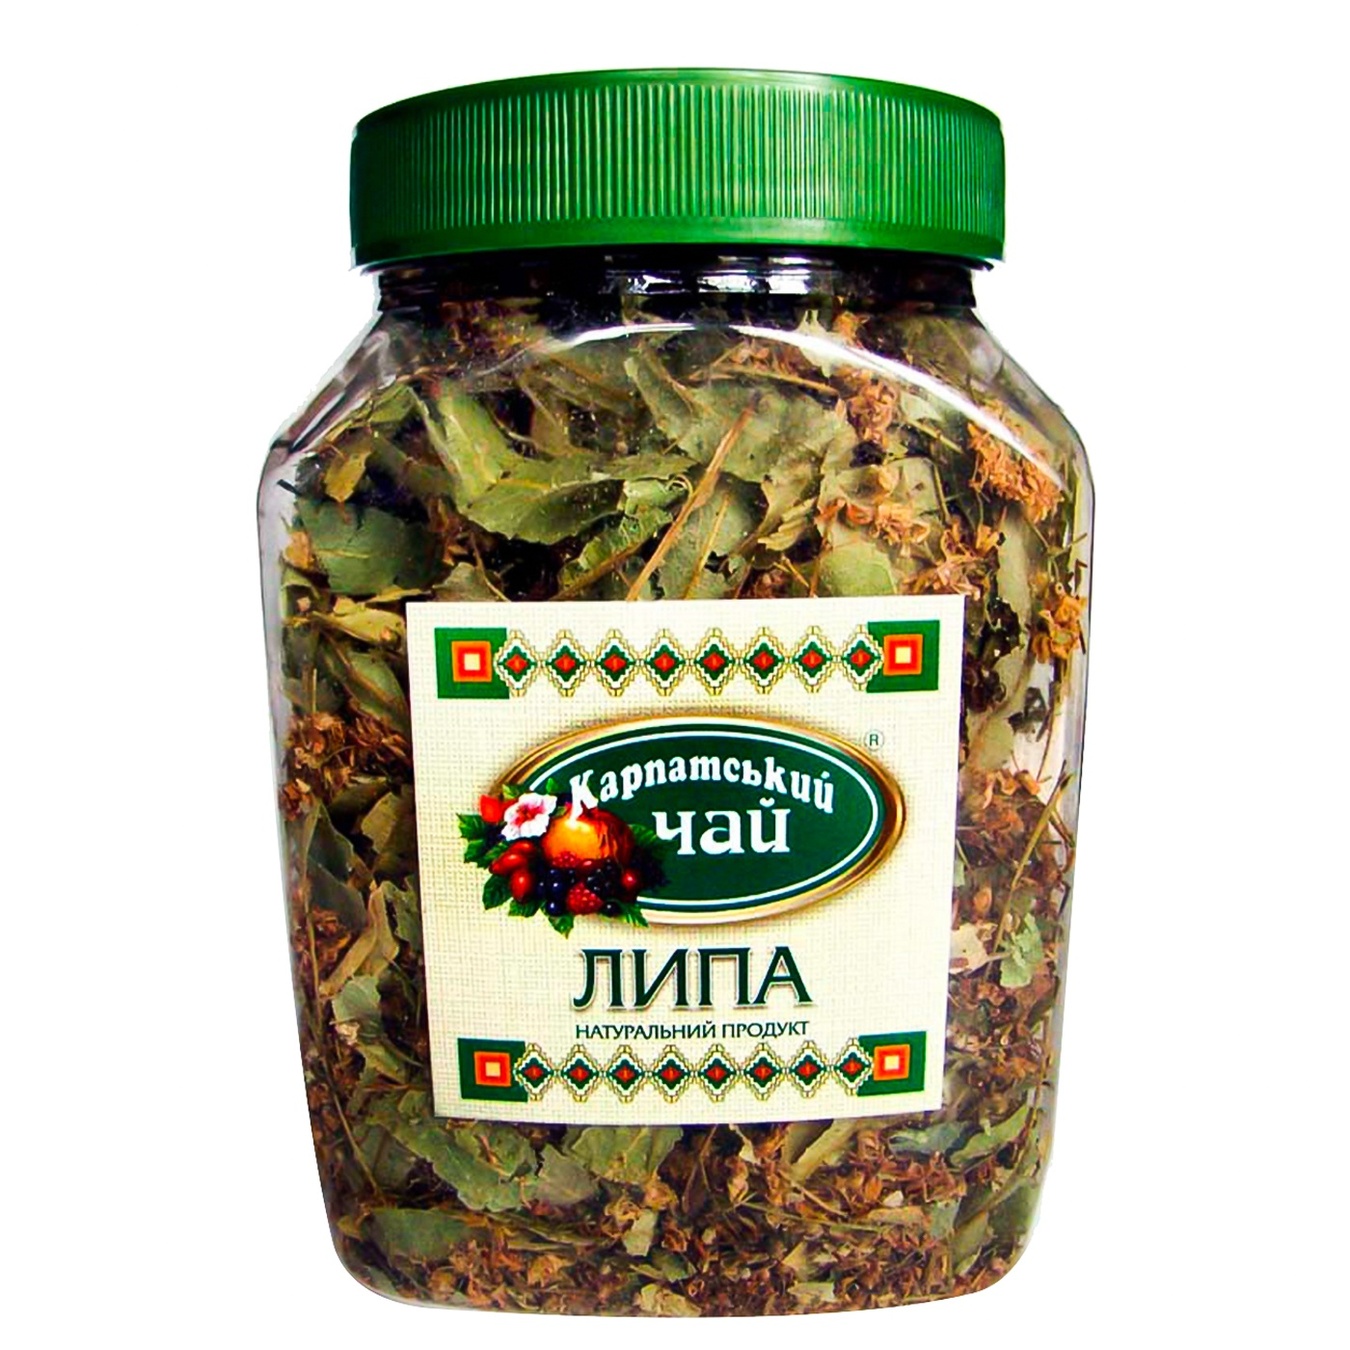 Чай Карпатський чай з квіту Липи п/б 35г